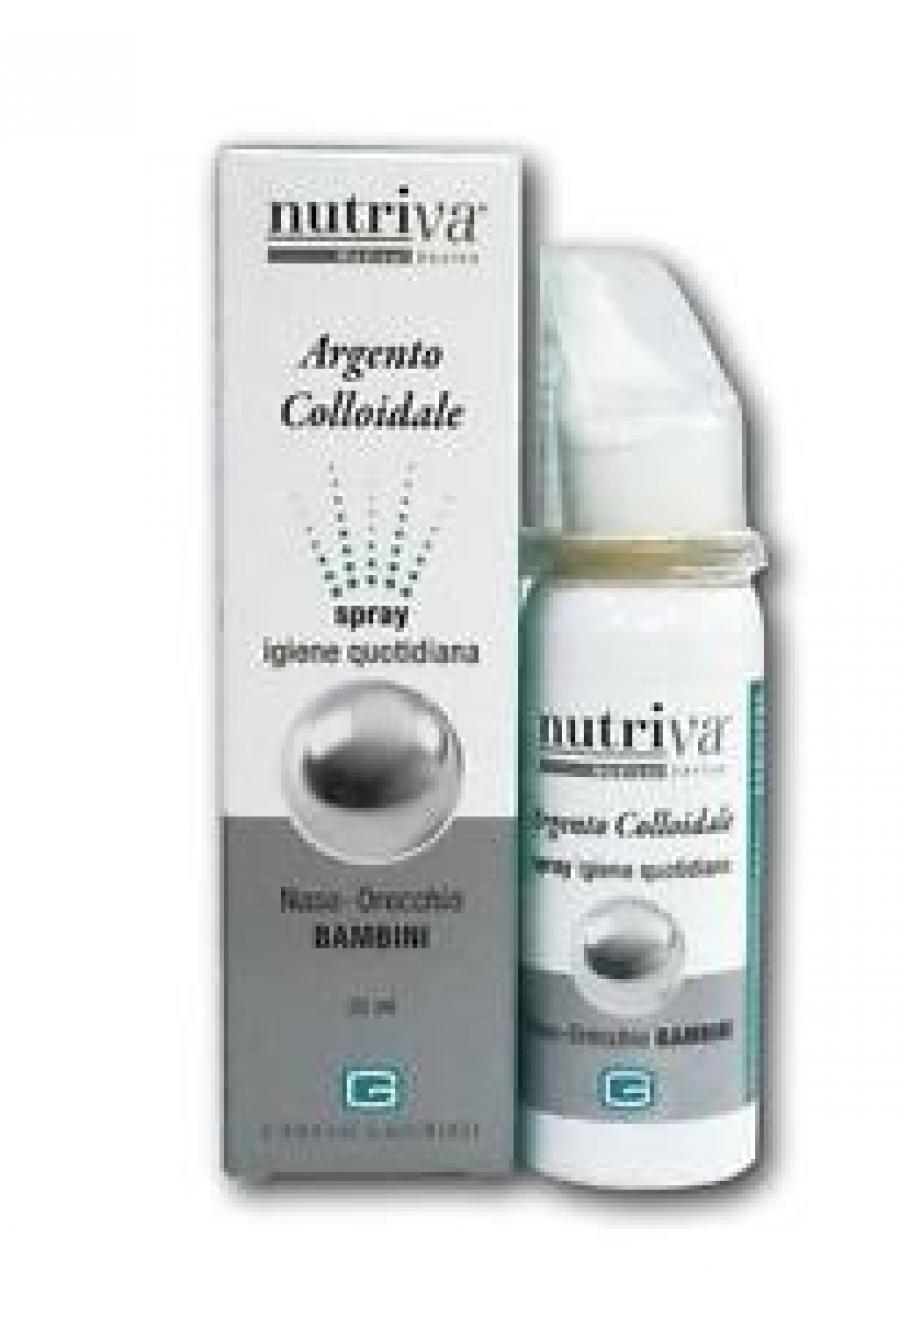 Nutriva argento colloidale spray bambini argento purissimo a 20 ppm